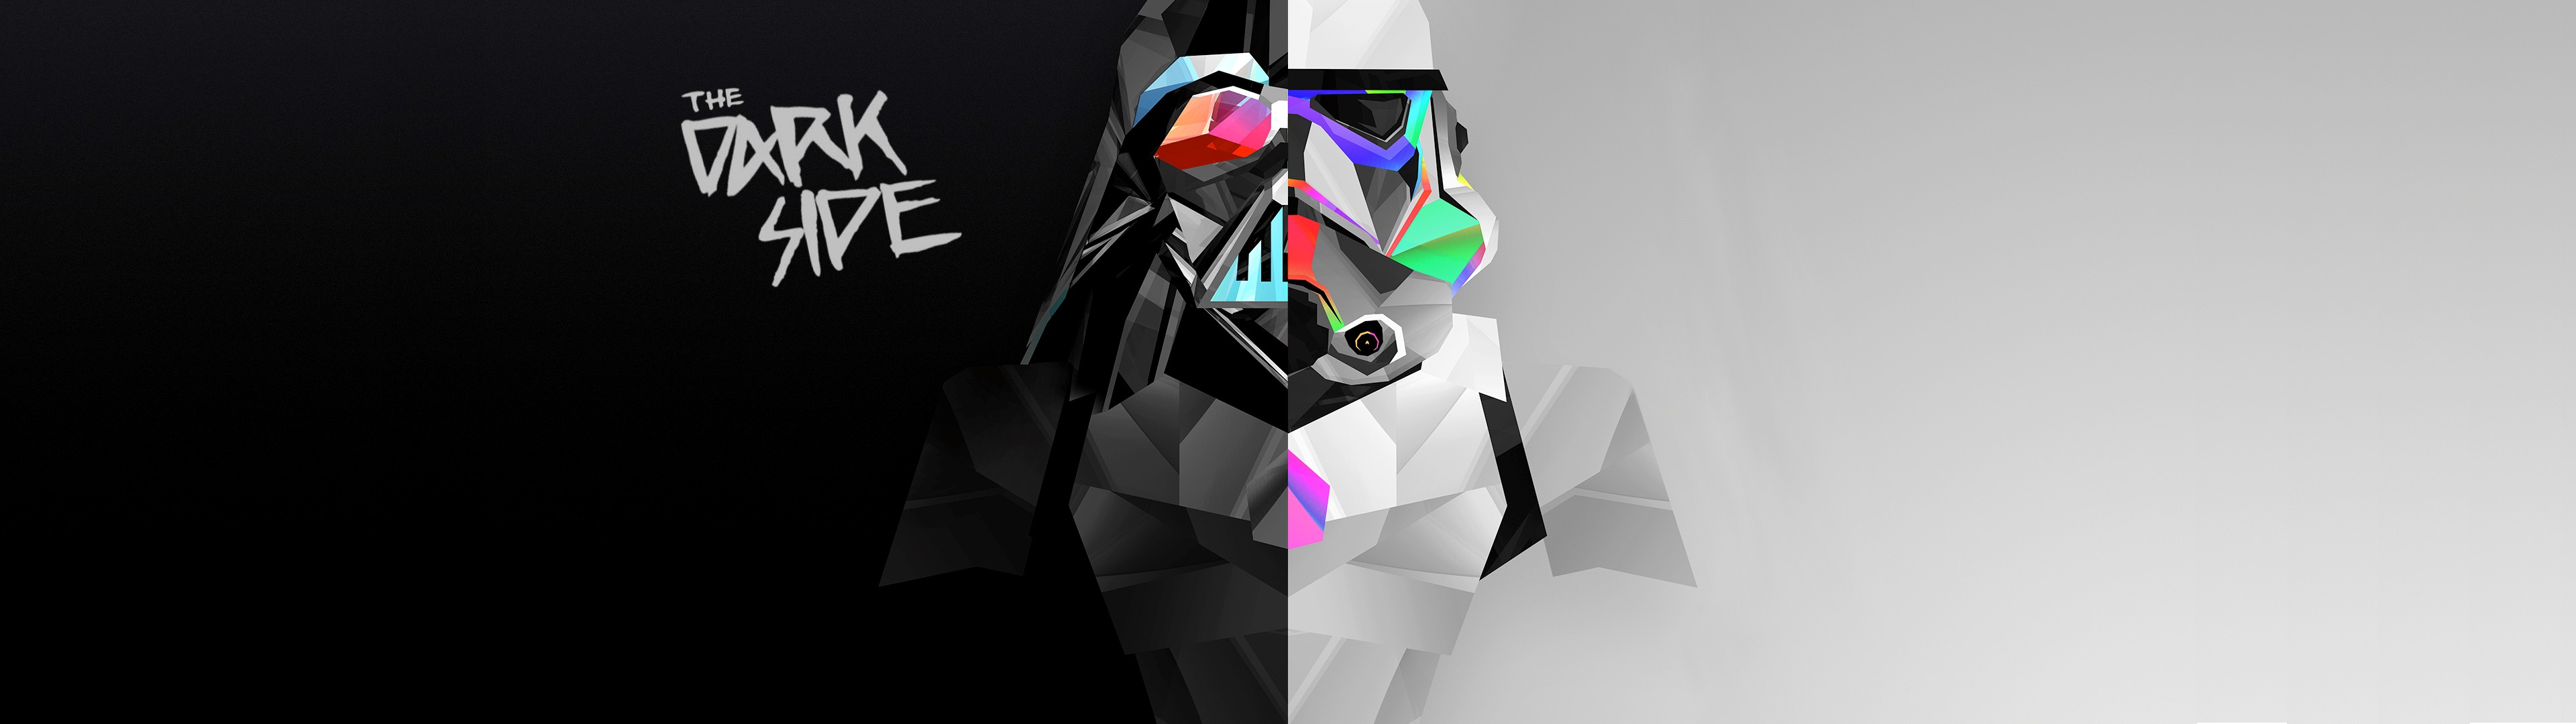 stormtrooper, Darth Vader, Multiple